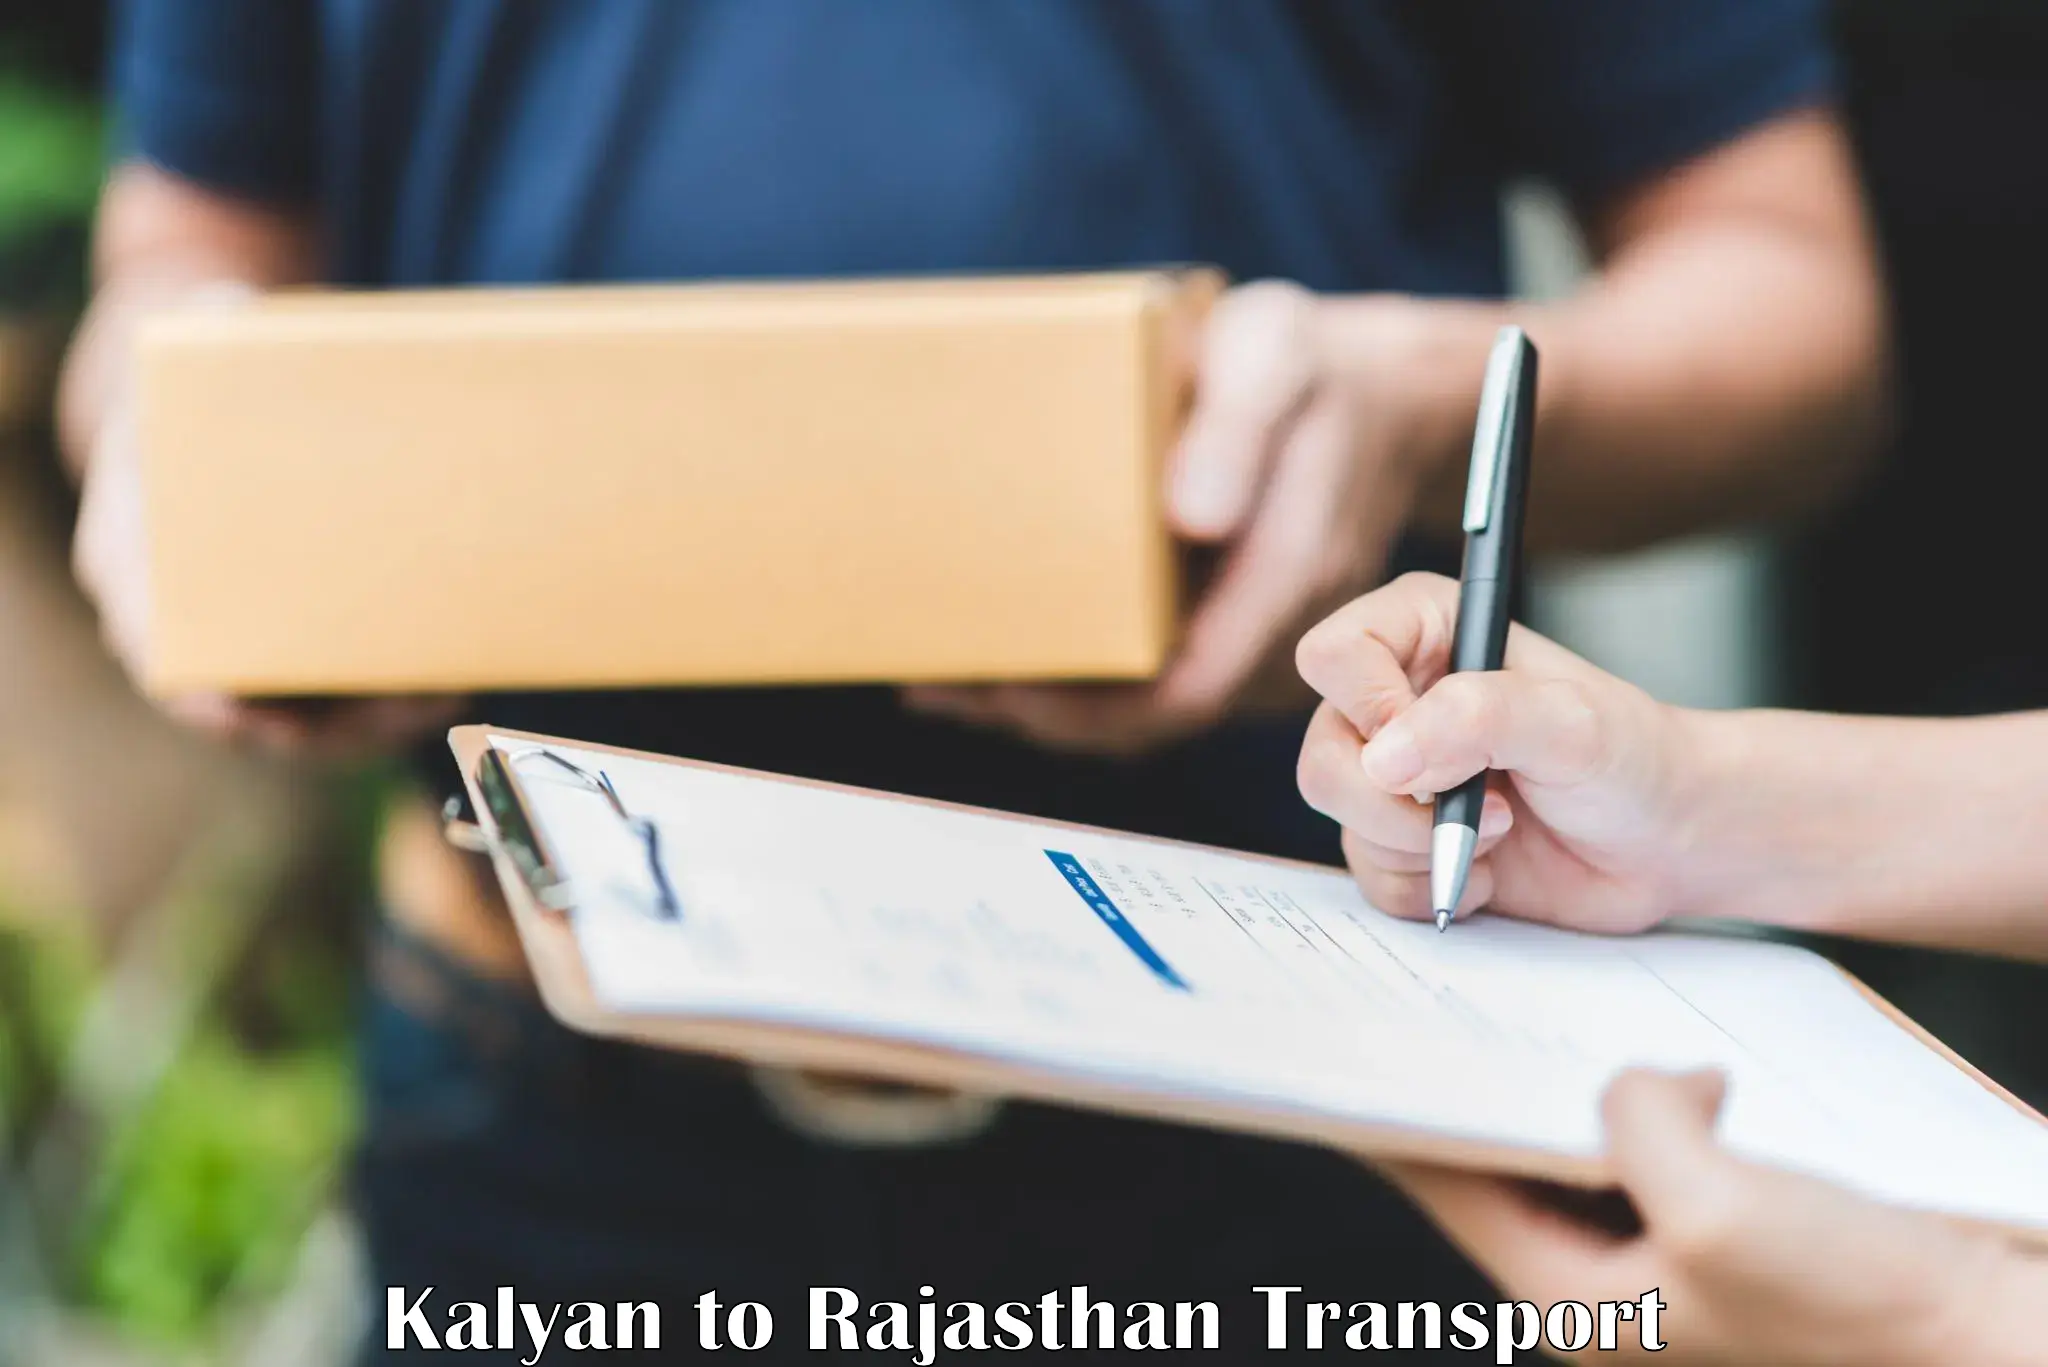 Nearby transport service Kalyan to Chomu